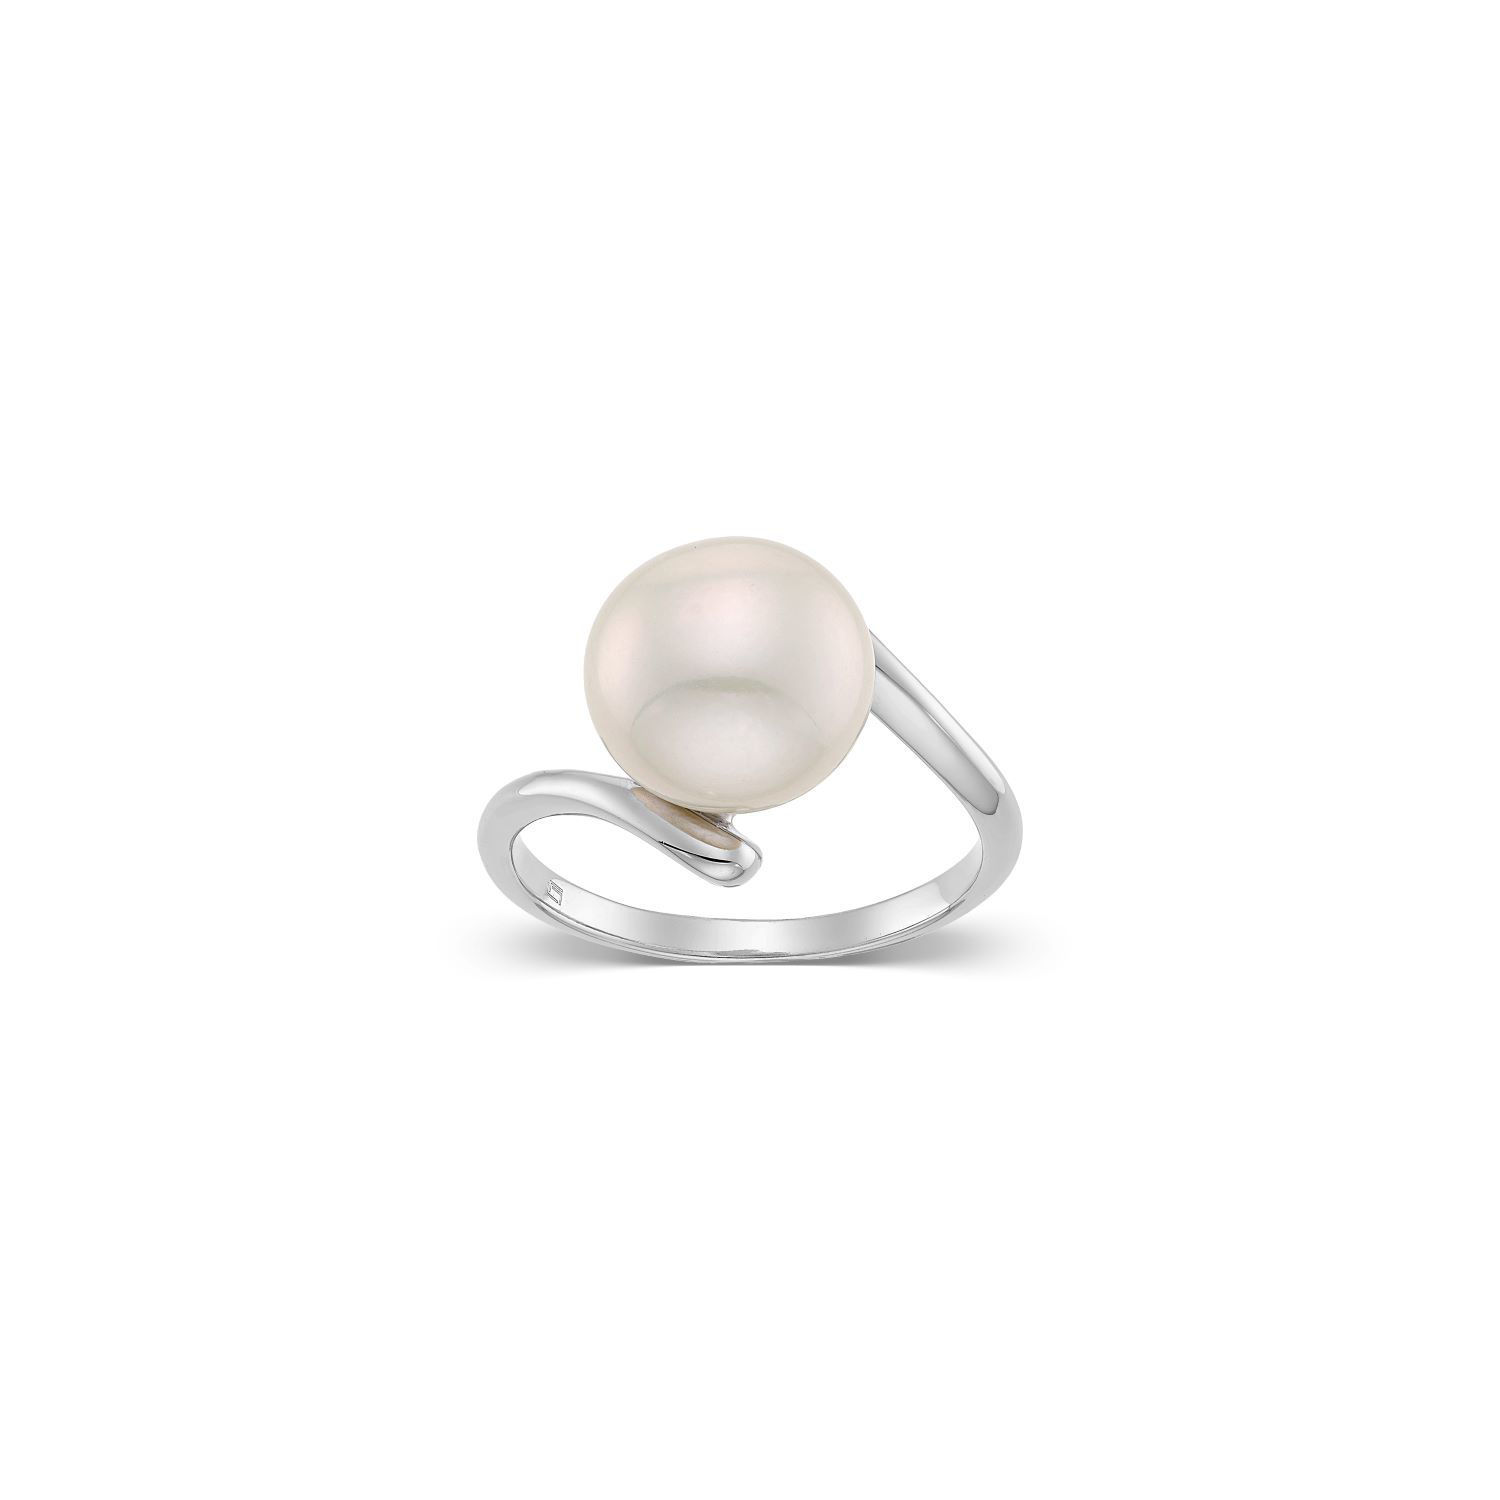 Δαχτυλίδι Pearls από επιροδιωμένο ασήμι 925° με freshwater pearl